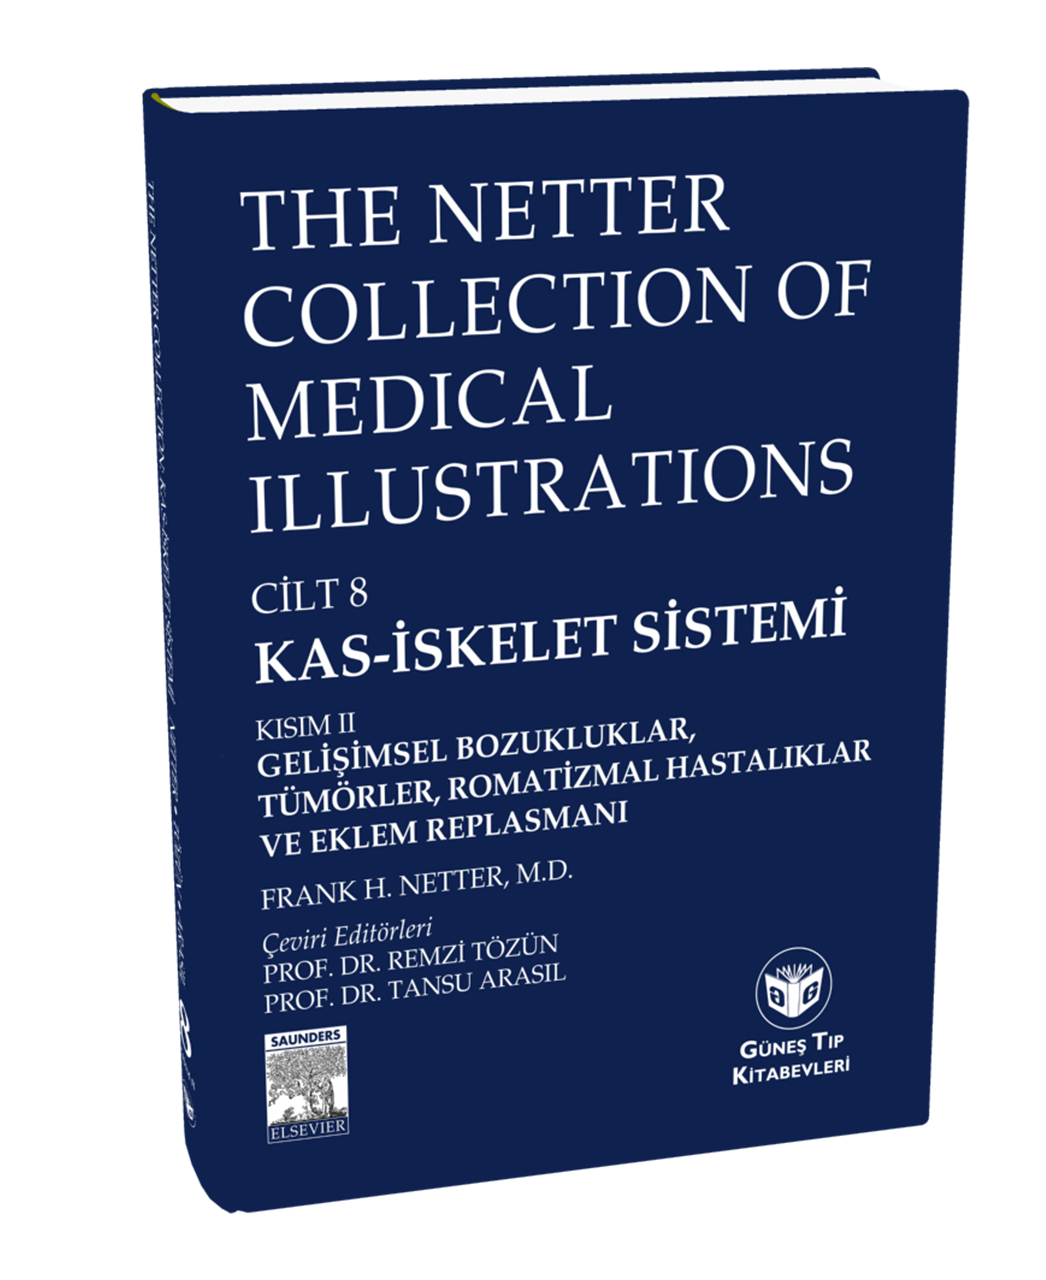 The Netter Collection of Medical Illustrations Kas-İskelet Sistemi: Gelişimsel Boz., Tümörler, Romatizmal Hast. ve Eklem Replasmanı